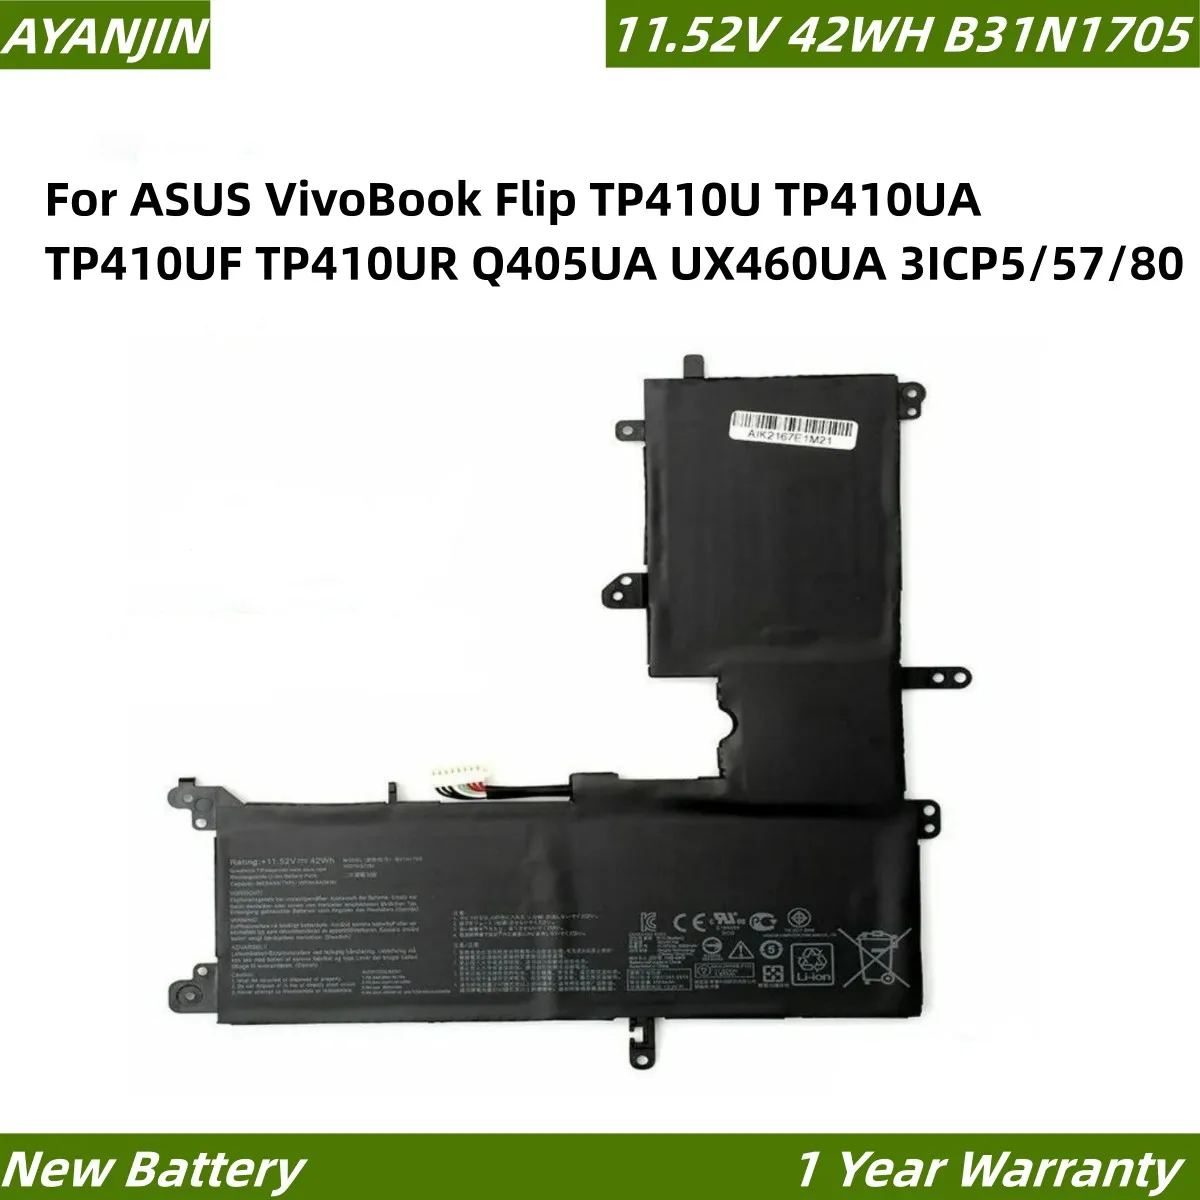 B31N1705 بطارية لابتوب ASUS VivoBook Flip TP410U TP410UA TP410UF TP410UR Q405UA UX460UA, 3ICP5/antv, 42WH